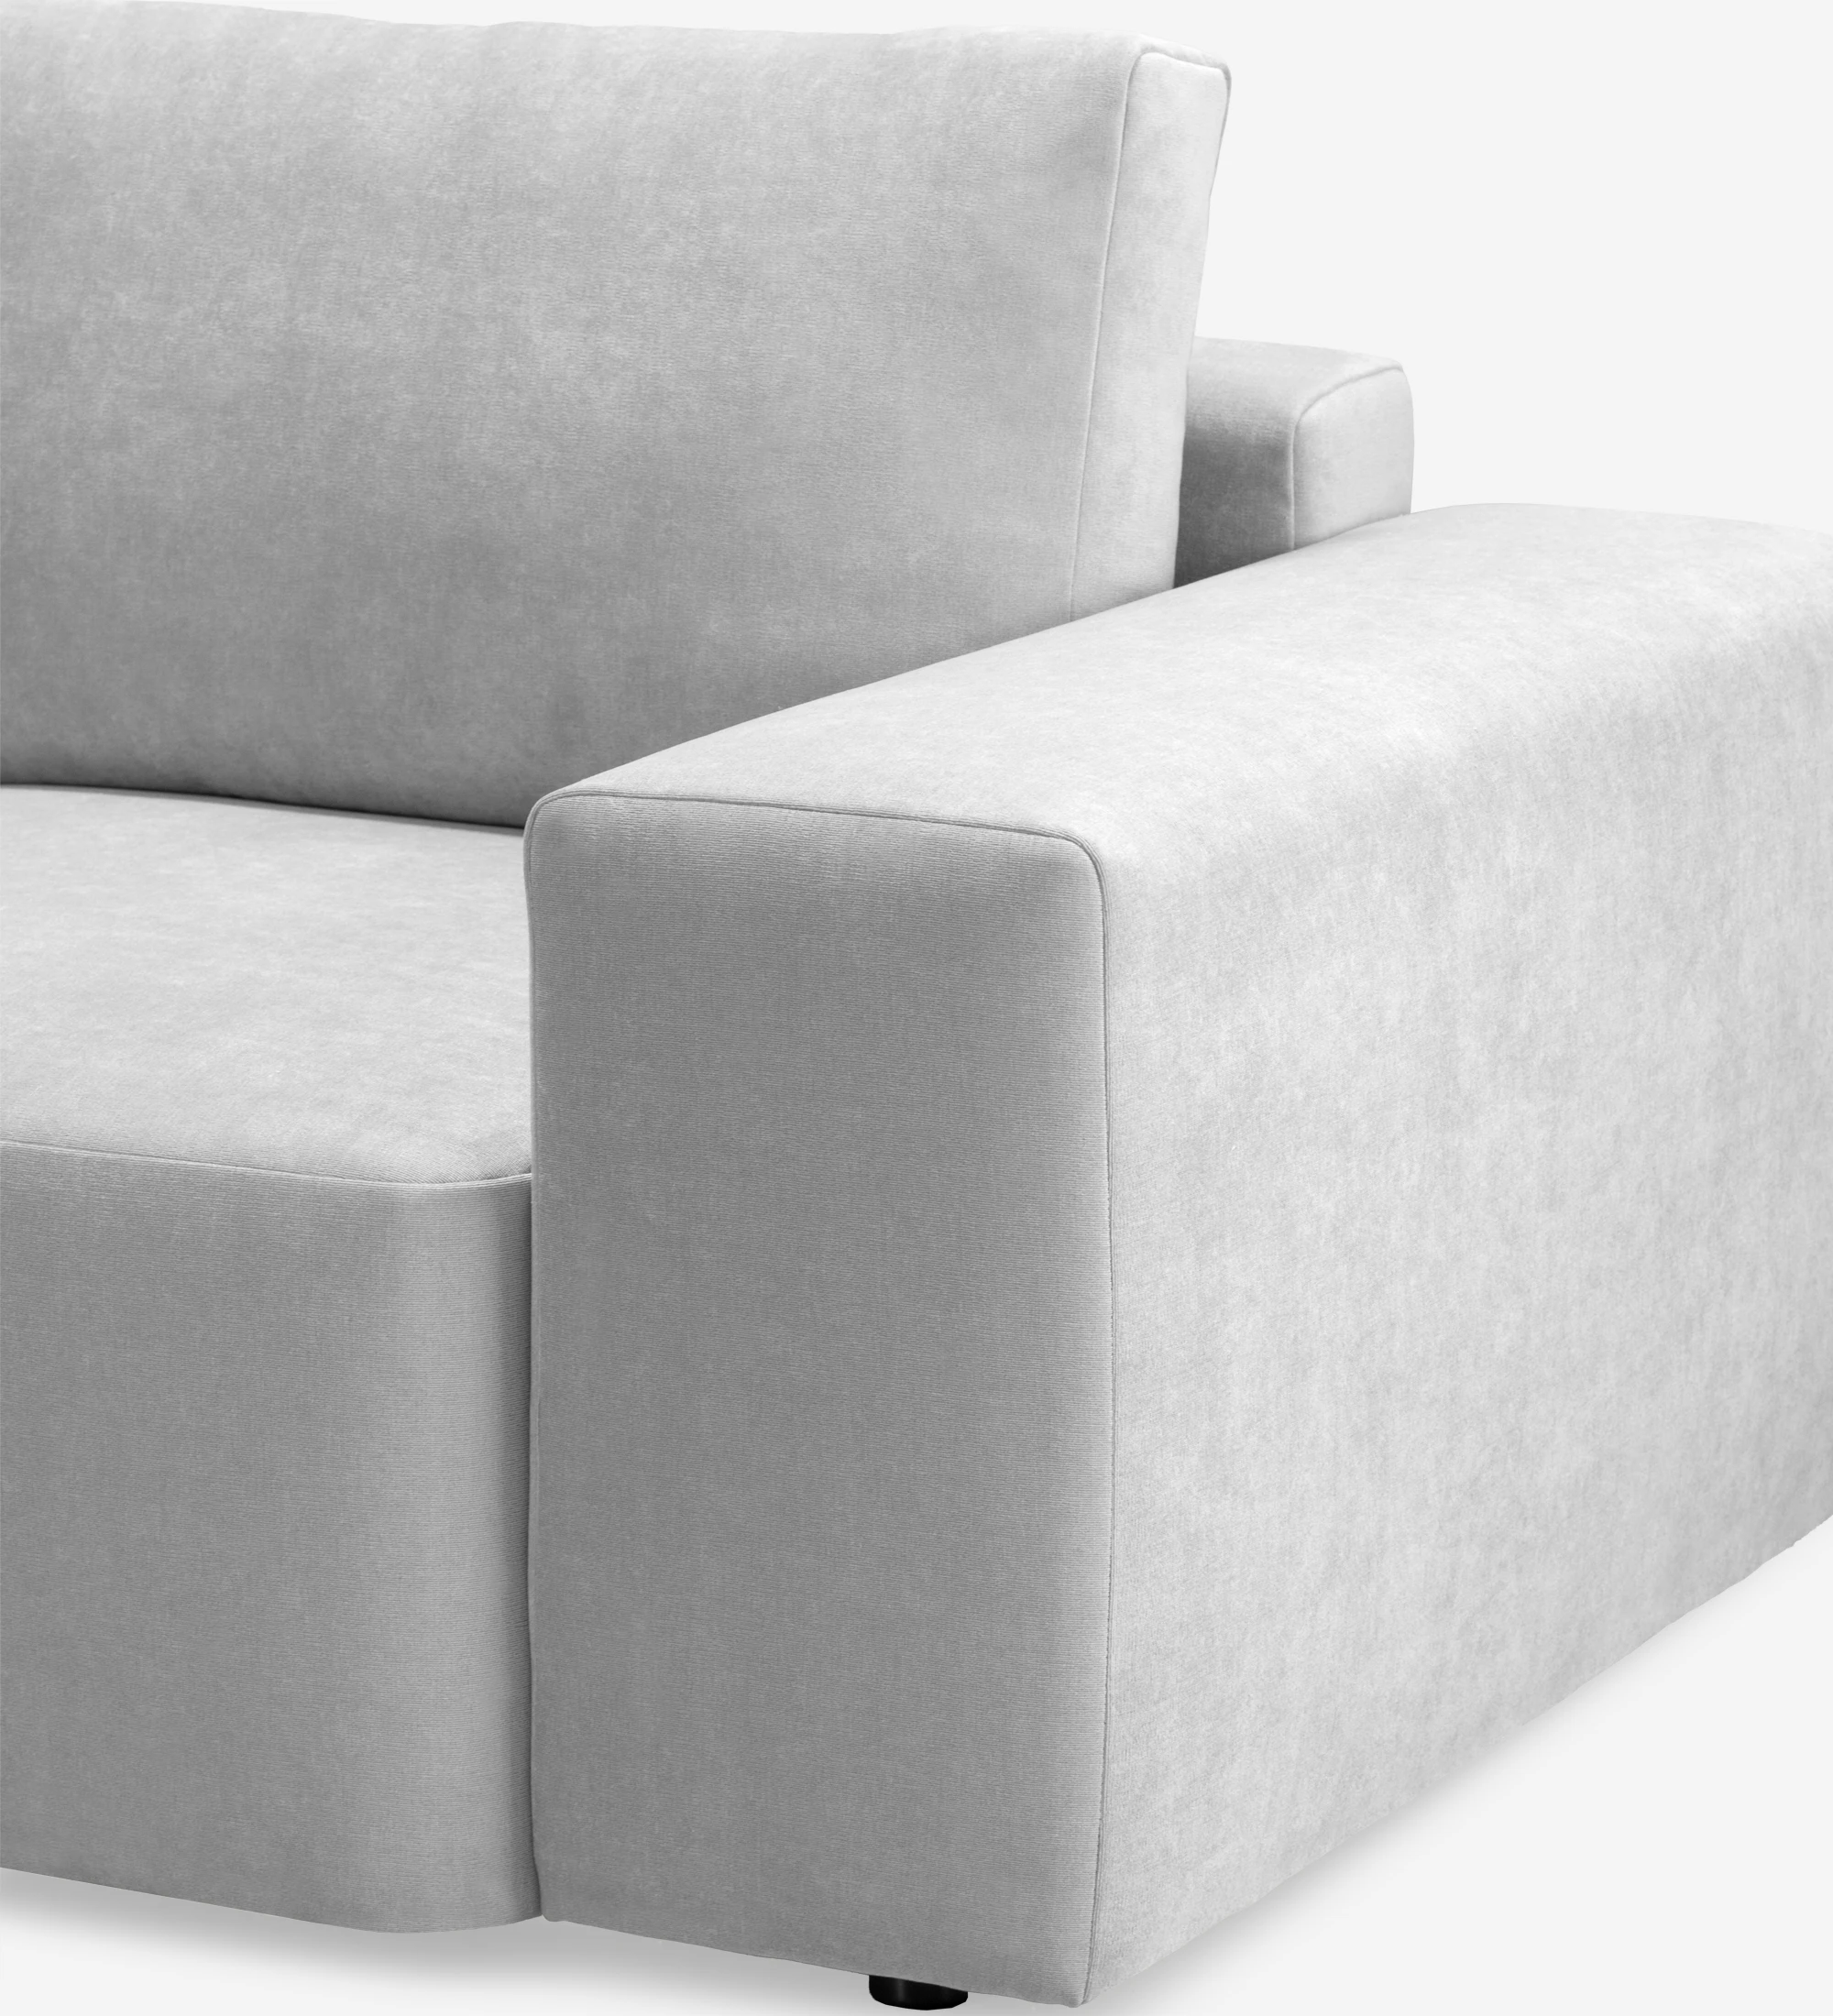 Canapé Paris 2 places et chaise longue gauche, recouvert en tissu gris, 307 cm.